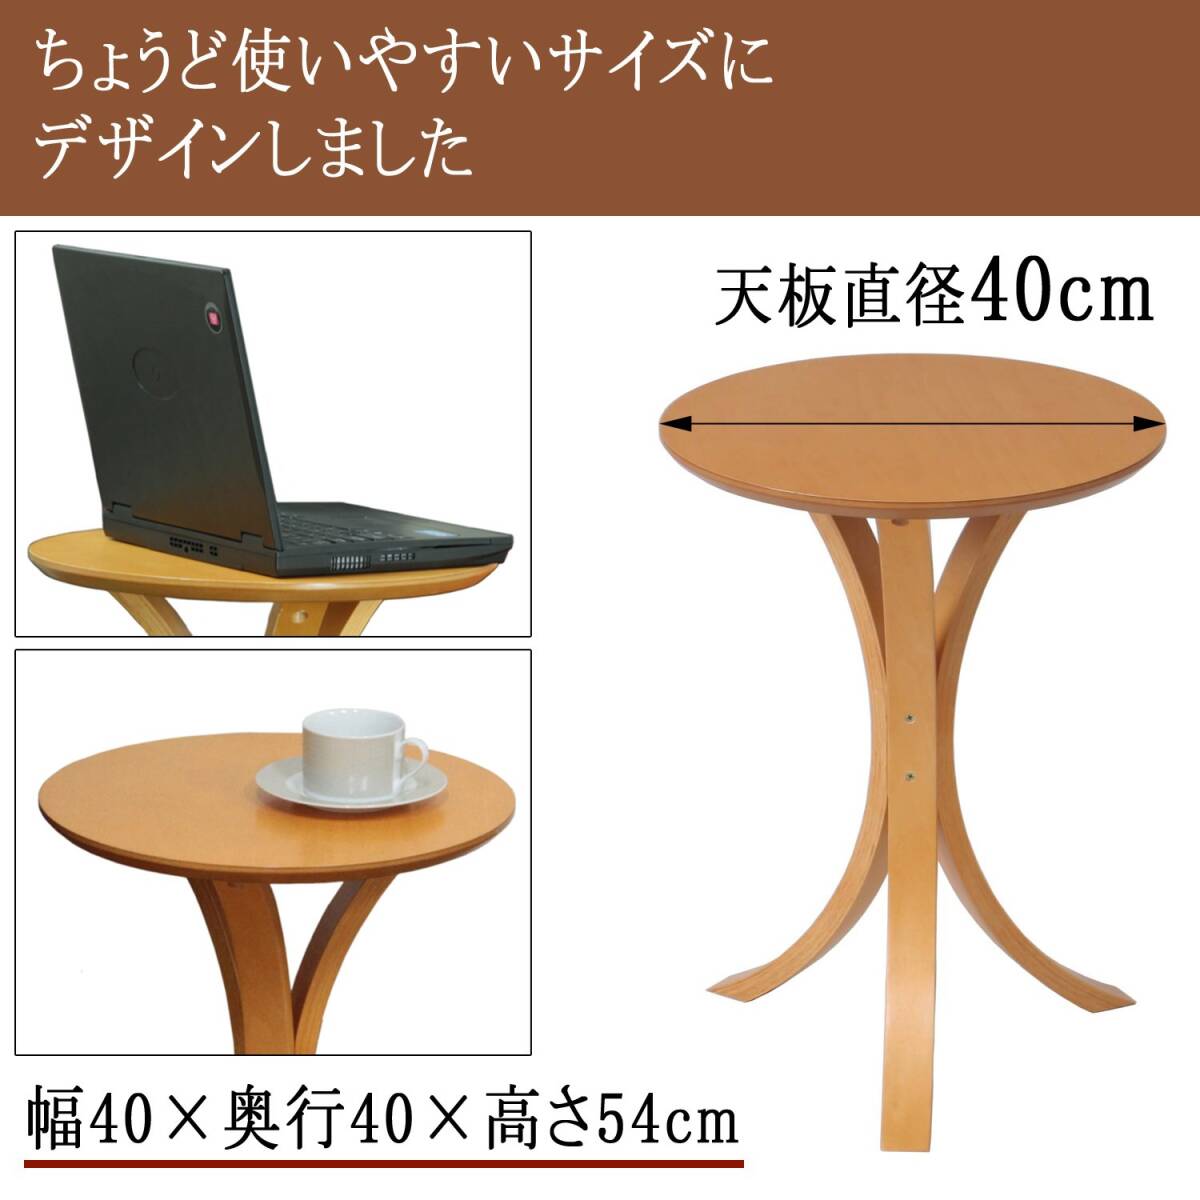 ☆ソファとの相性バツグン サイドテーブル 丸形 高品質 安全設計 操作簡単 3選